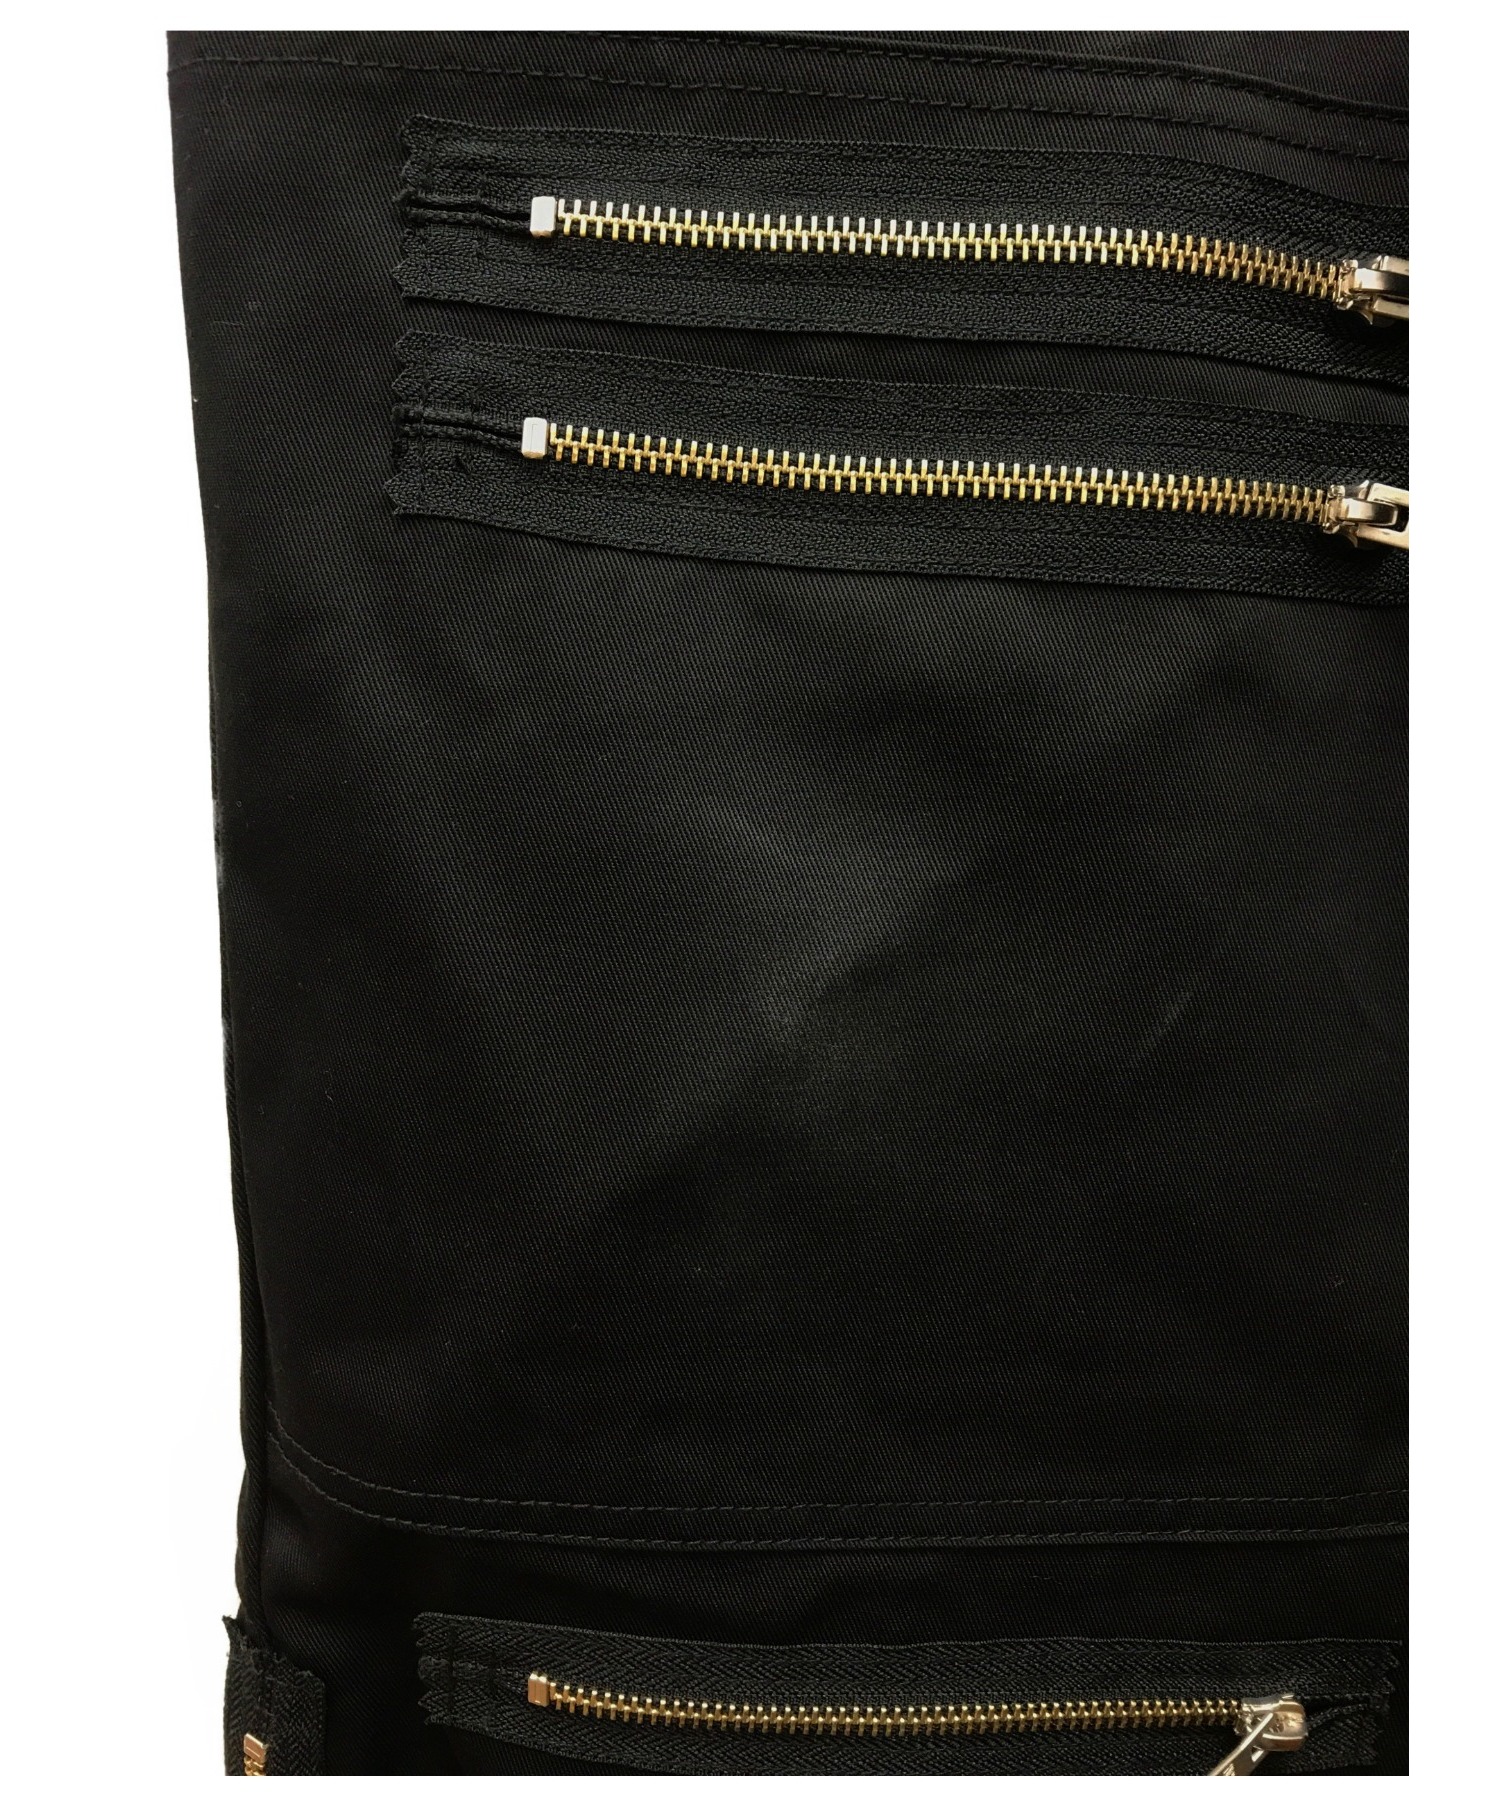 MYne×DICKIES (マイン×ディッキーズ) クレイジージップパンツ ブラック サイズ:M MYDKP310 crazy zip pants